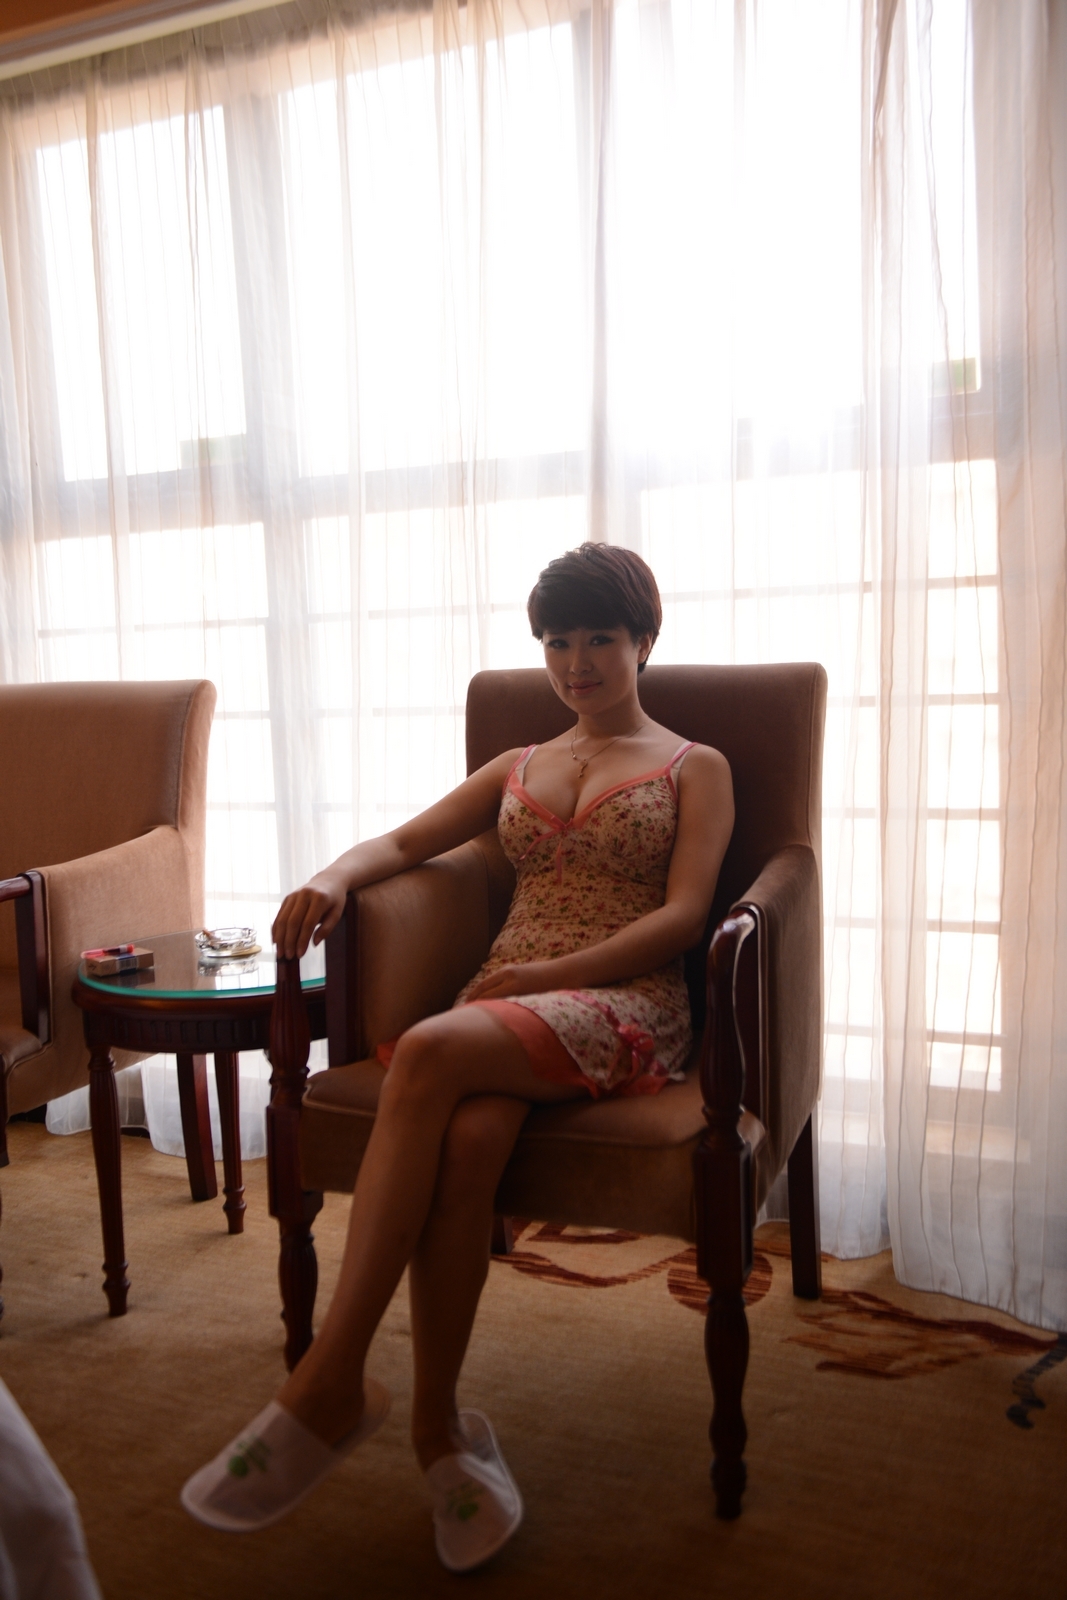 [Xiwei society] Xiwei society Portrait Photography - young woman Xiaoyun 2